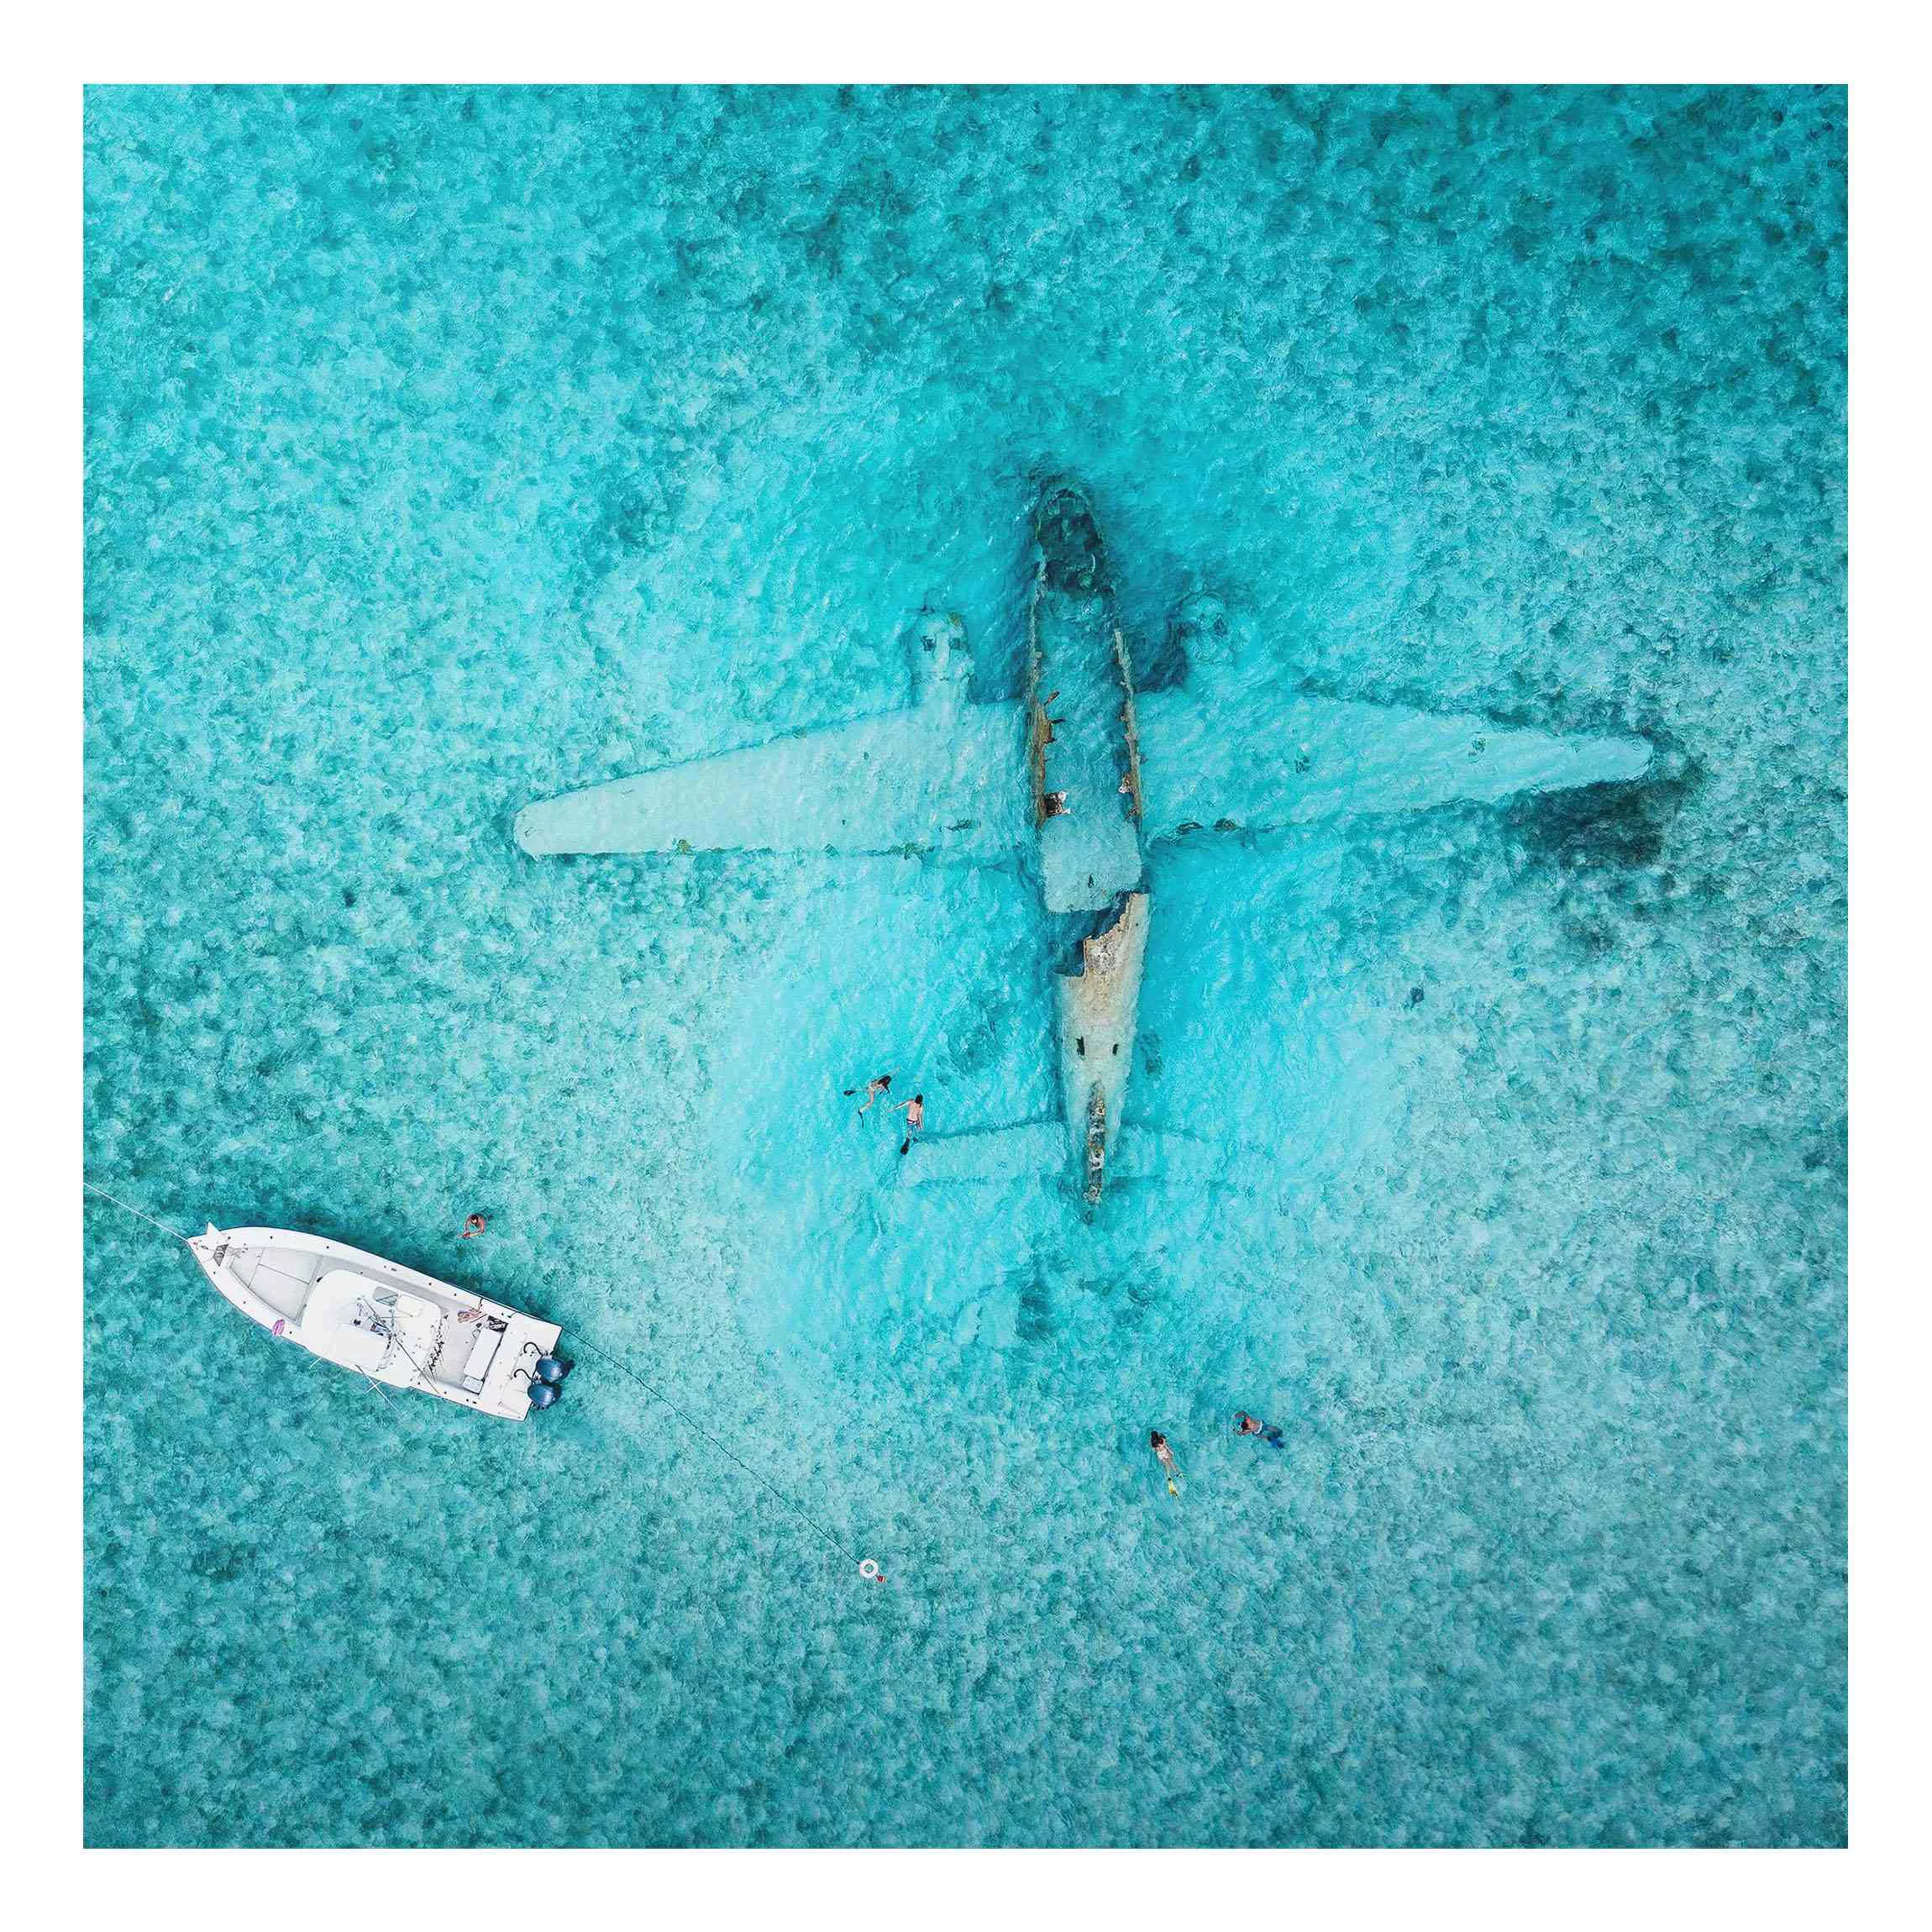 Alu-Dibond Bild Top View Flugzeugwrack im Meer günstig online kaufen